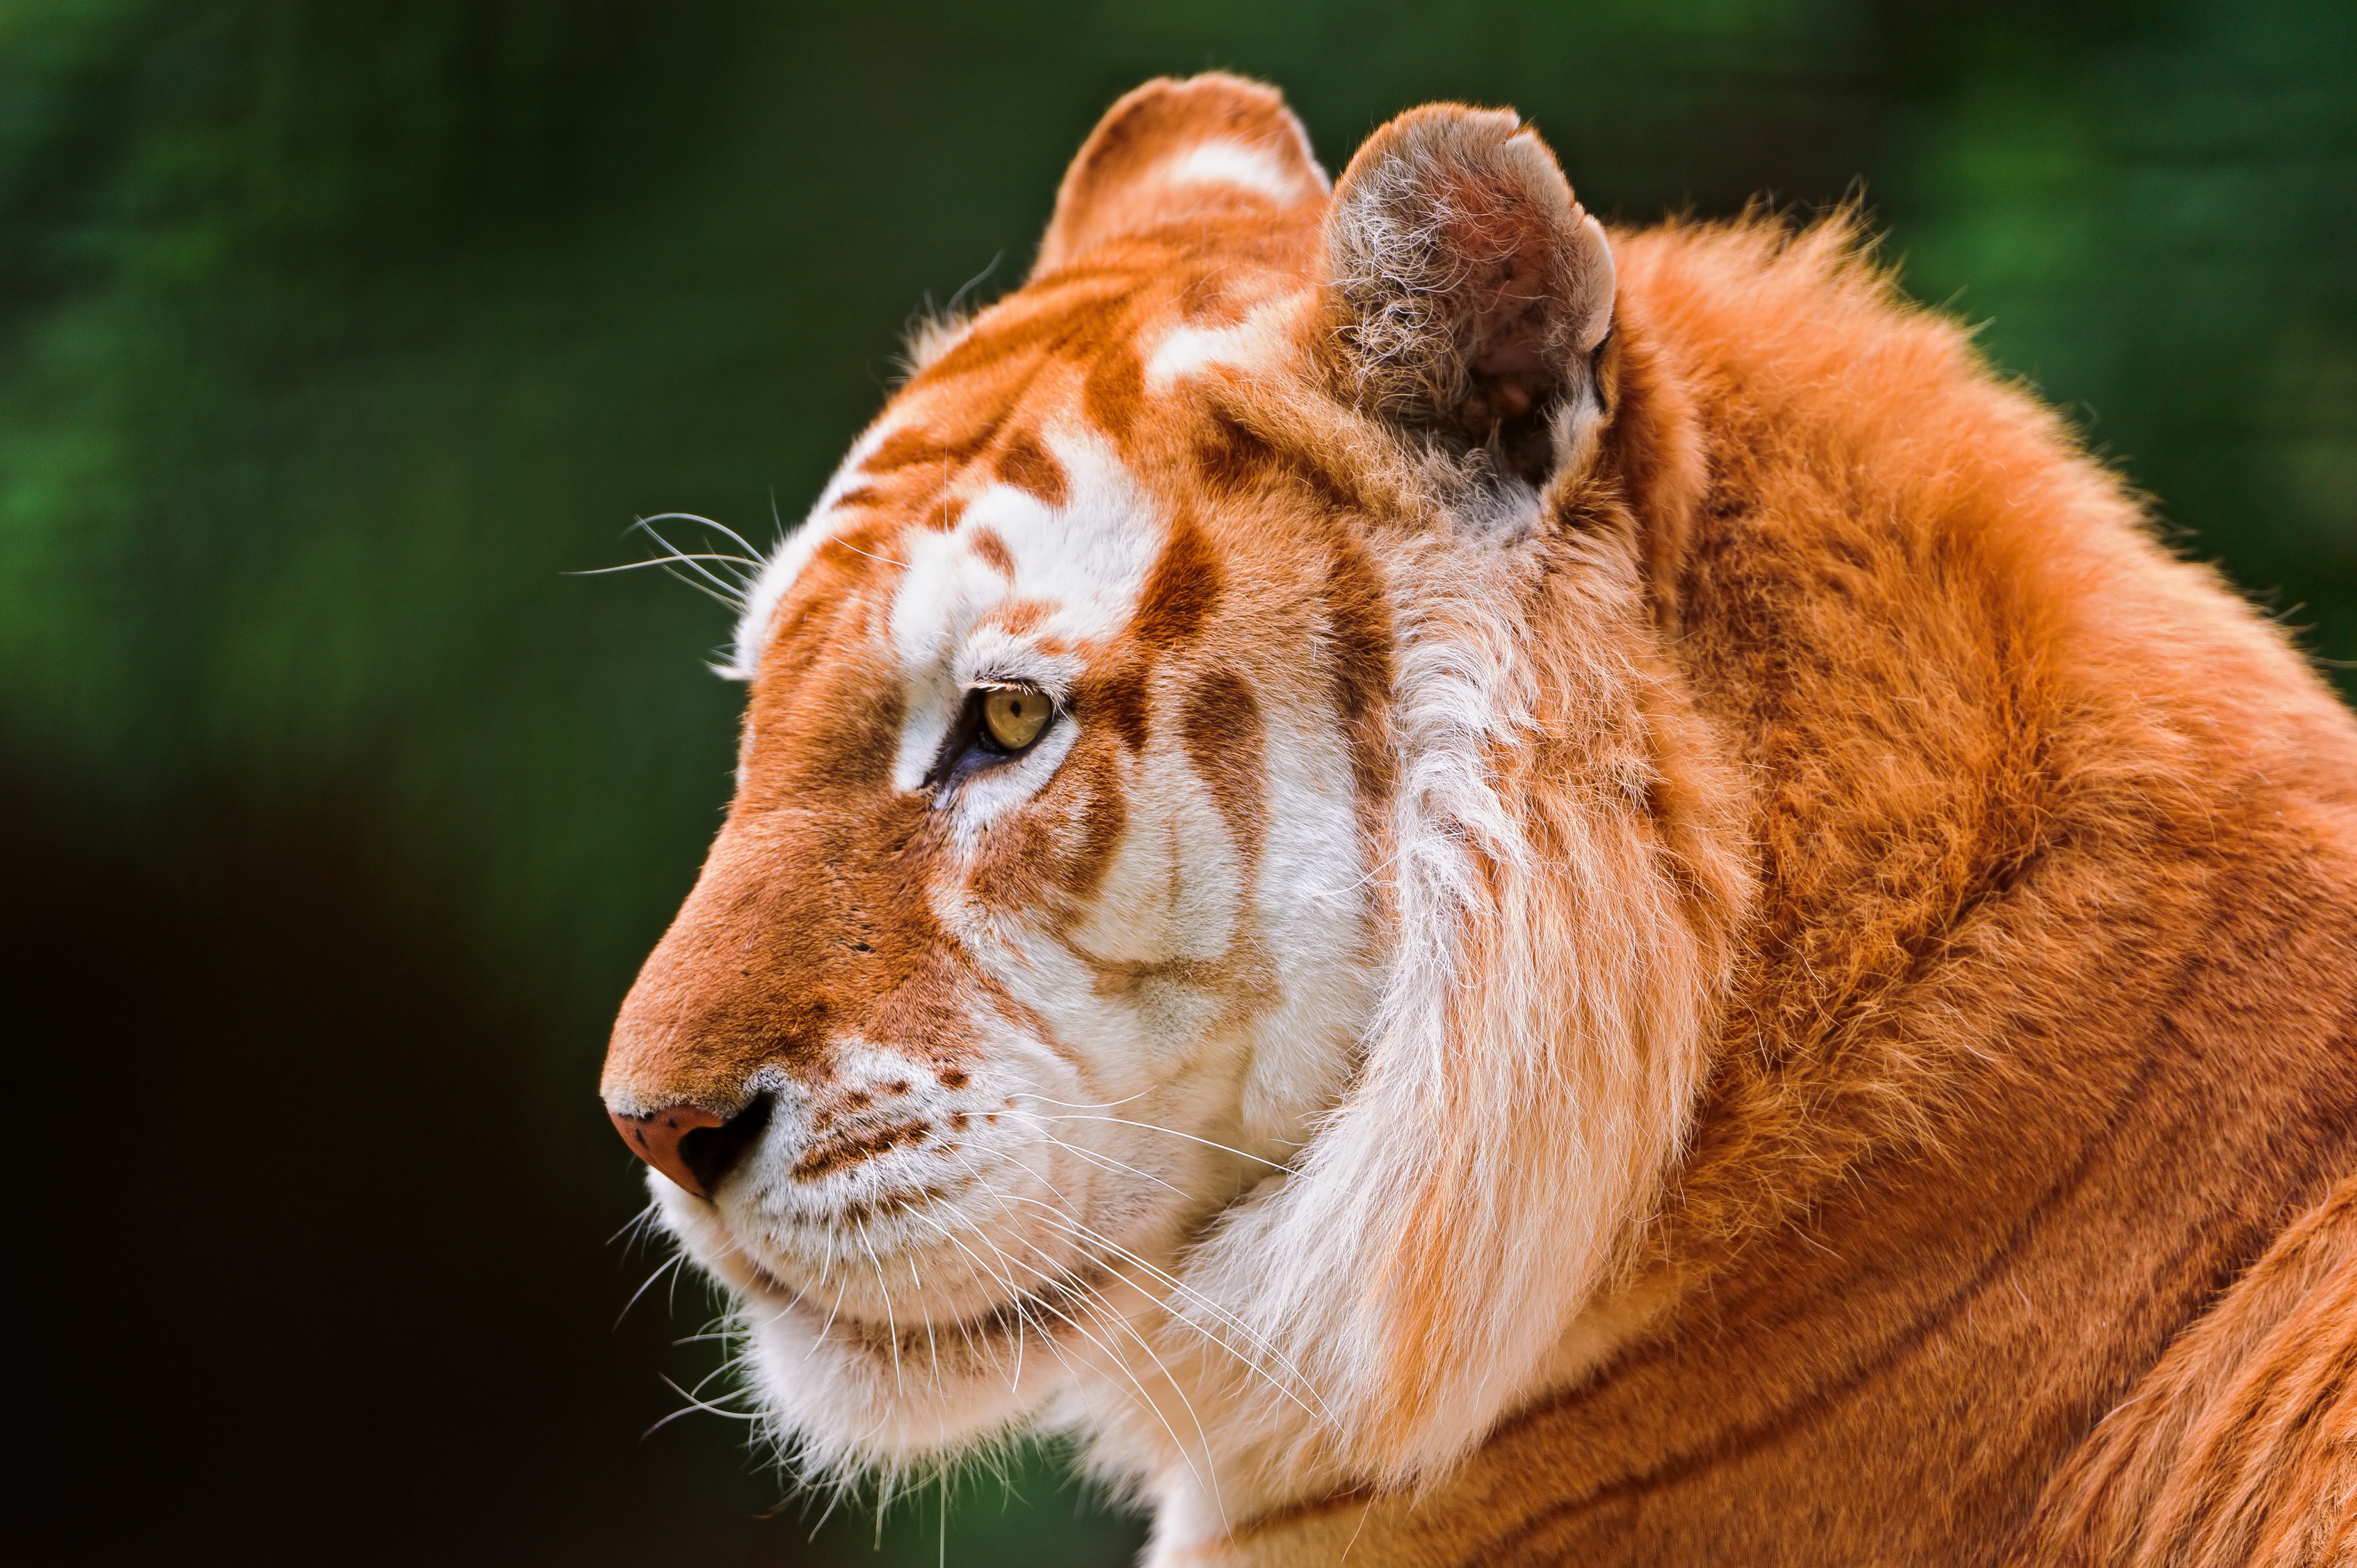 Animals images. Голден Тайгер тигр. Золотой бенгальский тигр. Красивый тигр. Тигр морда.